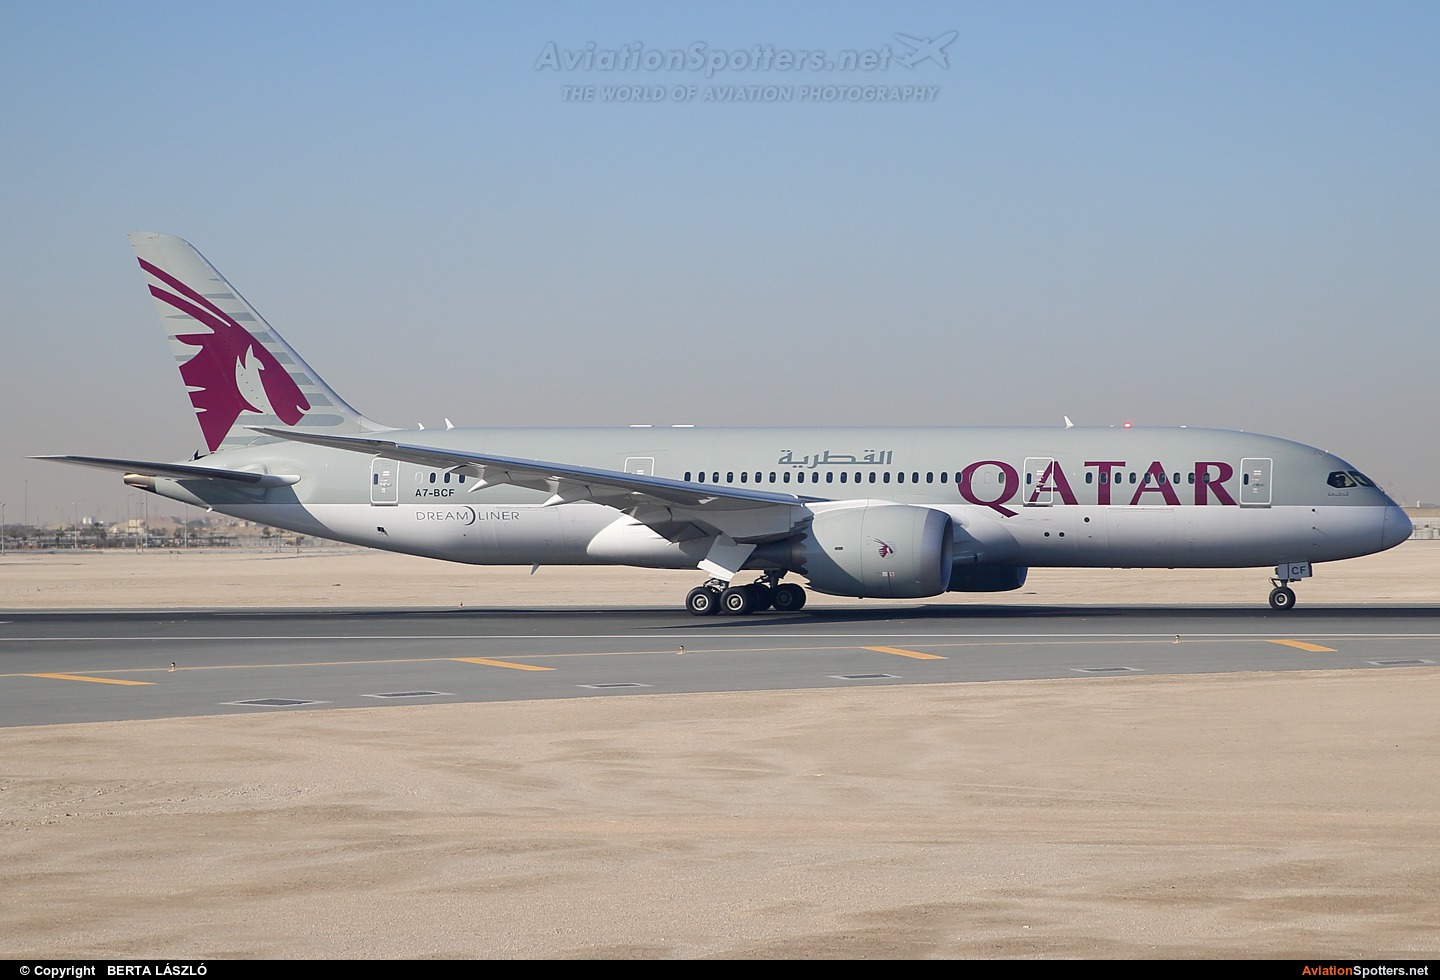 Qatar Airways  -  787-8 Dreamliner  (A7-BCF) By BERTA LÁSZLÓ (BERTAL)